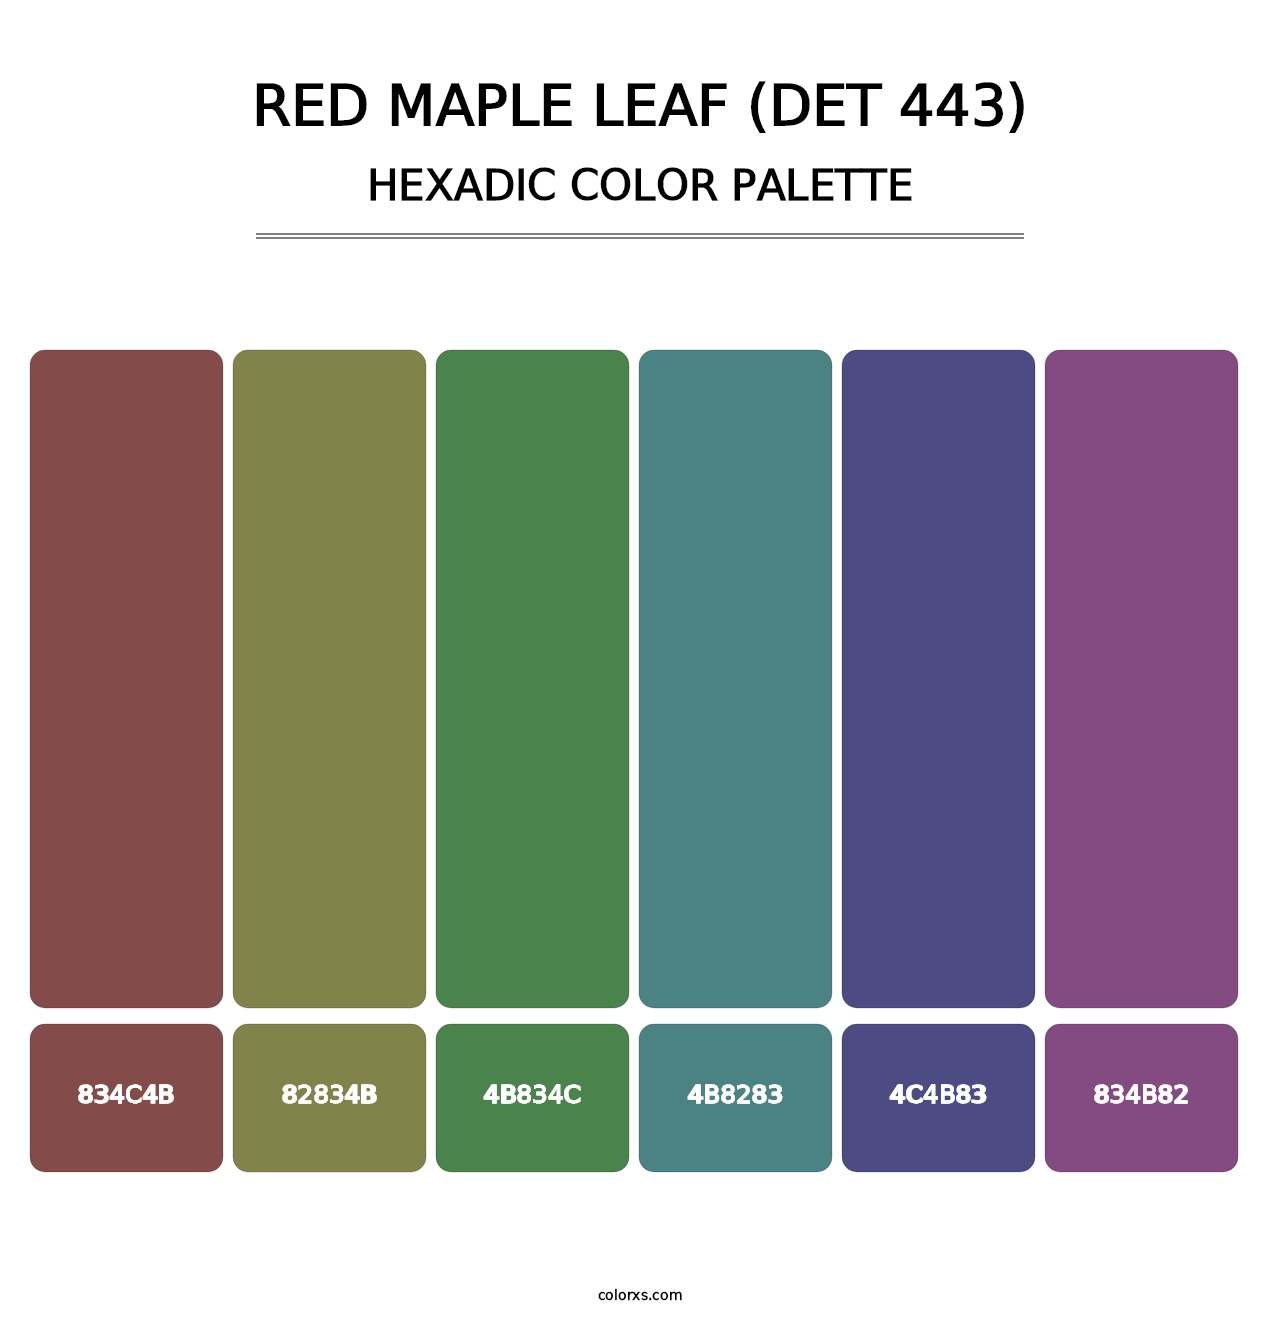 Red Maple Leaf (DET 443) - Hexadic Color Palette